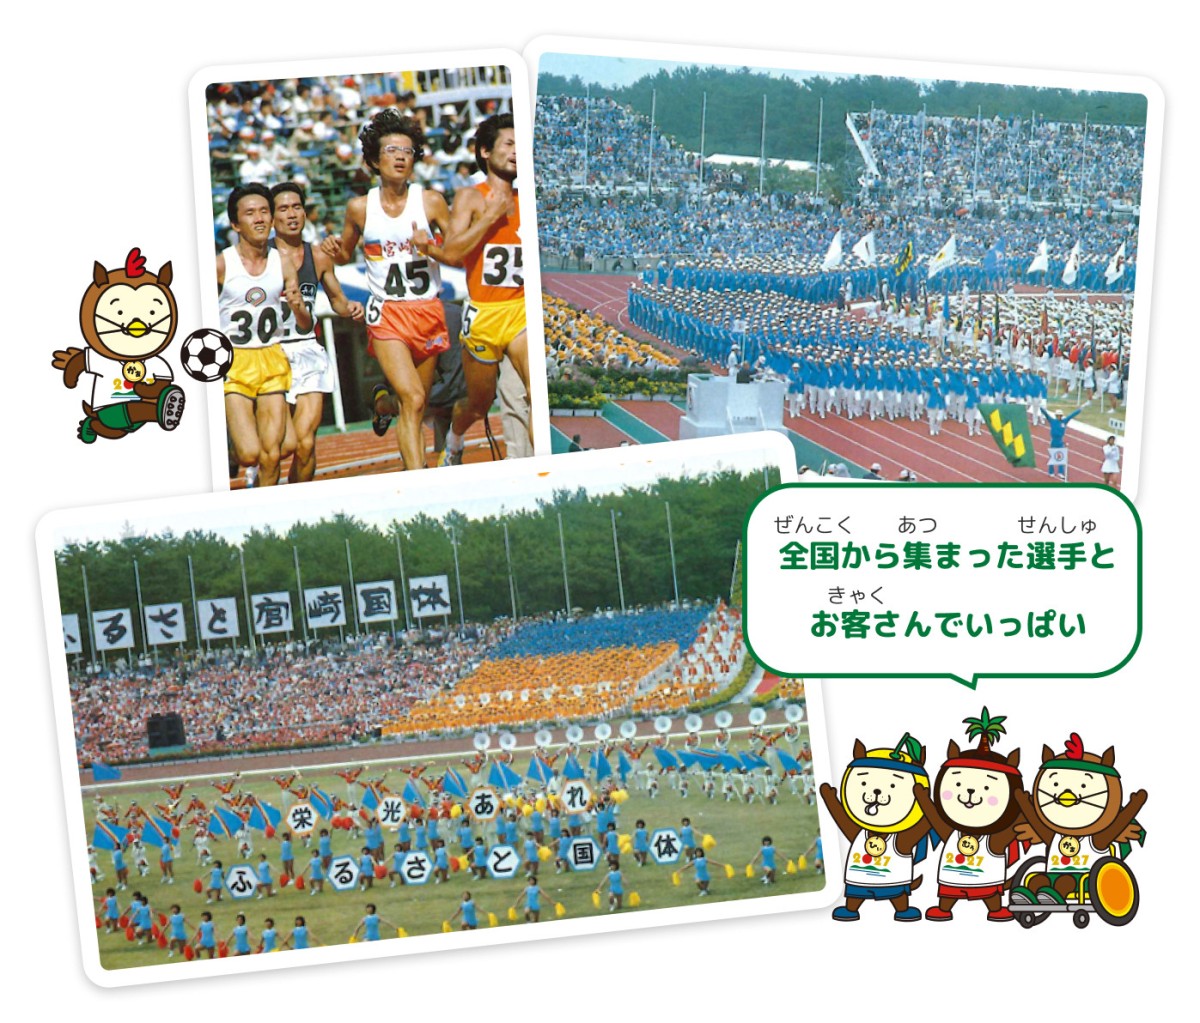 1979年（昭和54年）に開催された日本のふるさと宮崎国体の写真3枚。左上にサッカーをしているキャラクターと、右下に3人のキャラクターがおり、「全国から集まった選手とお客さんでいっぱい」と言っている。